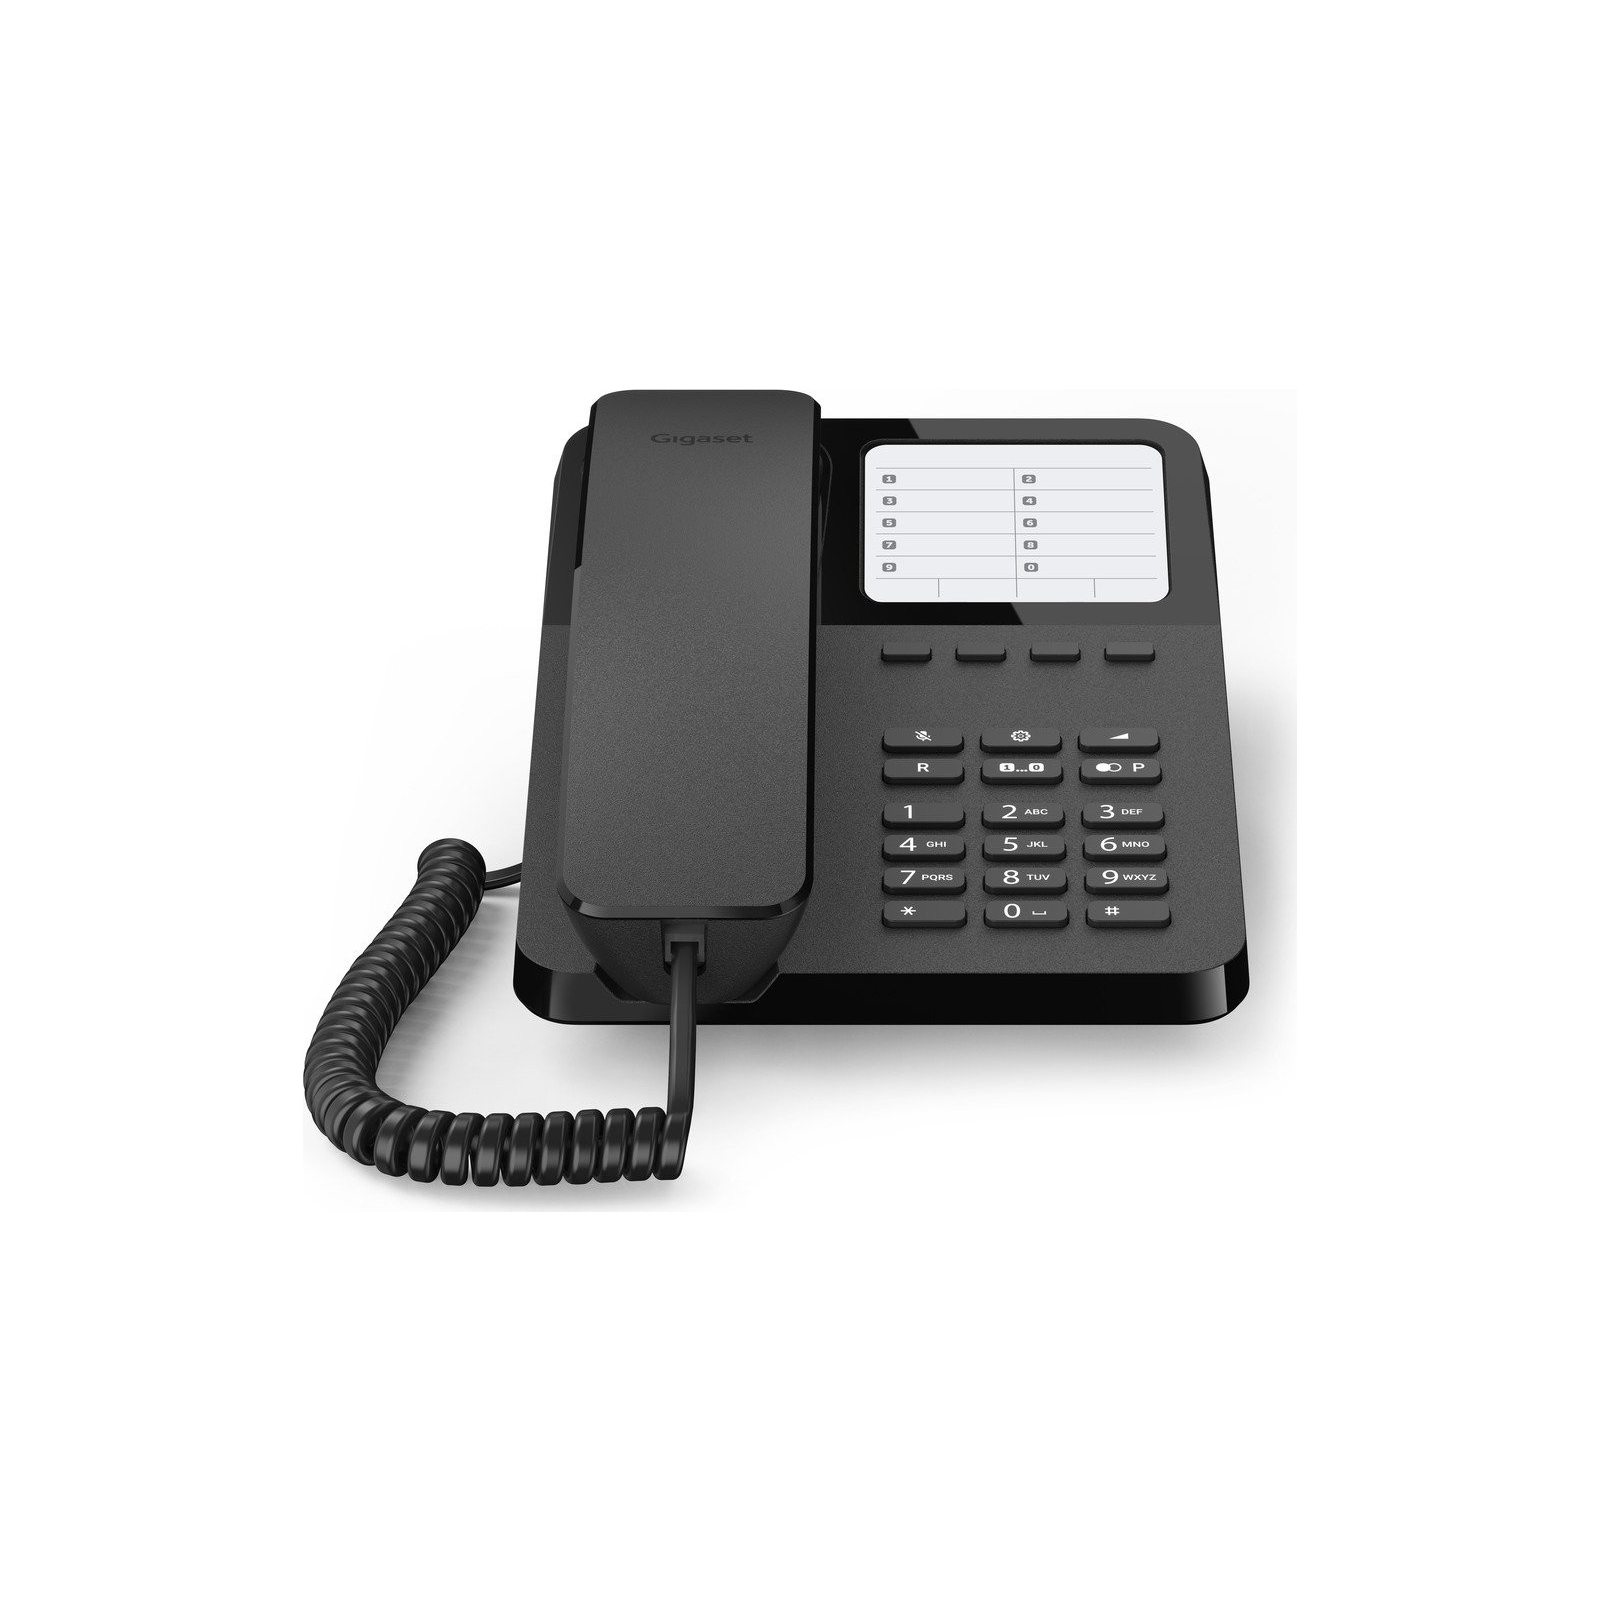 Телефон Gigaset DESK 400 Black (S30054H6538S201) изображение 3